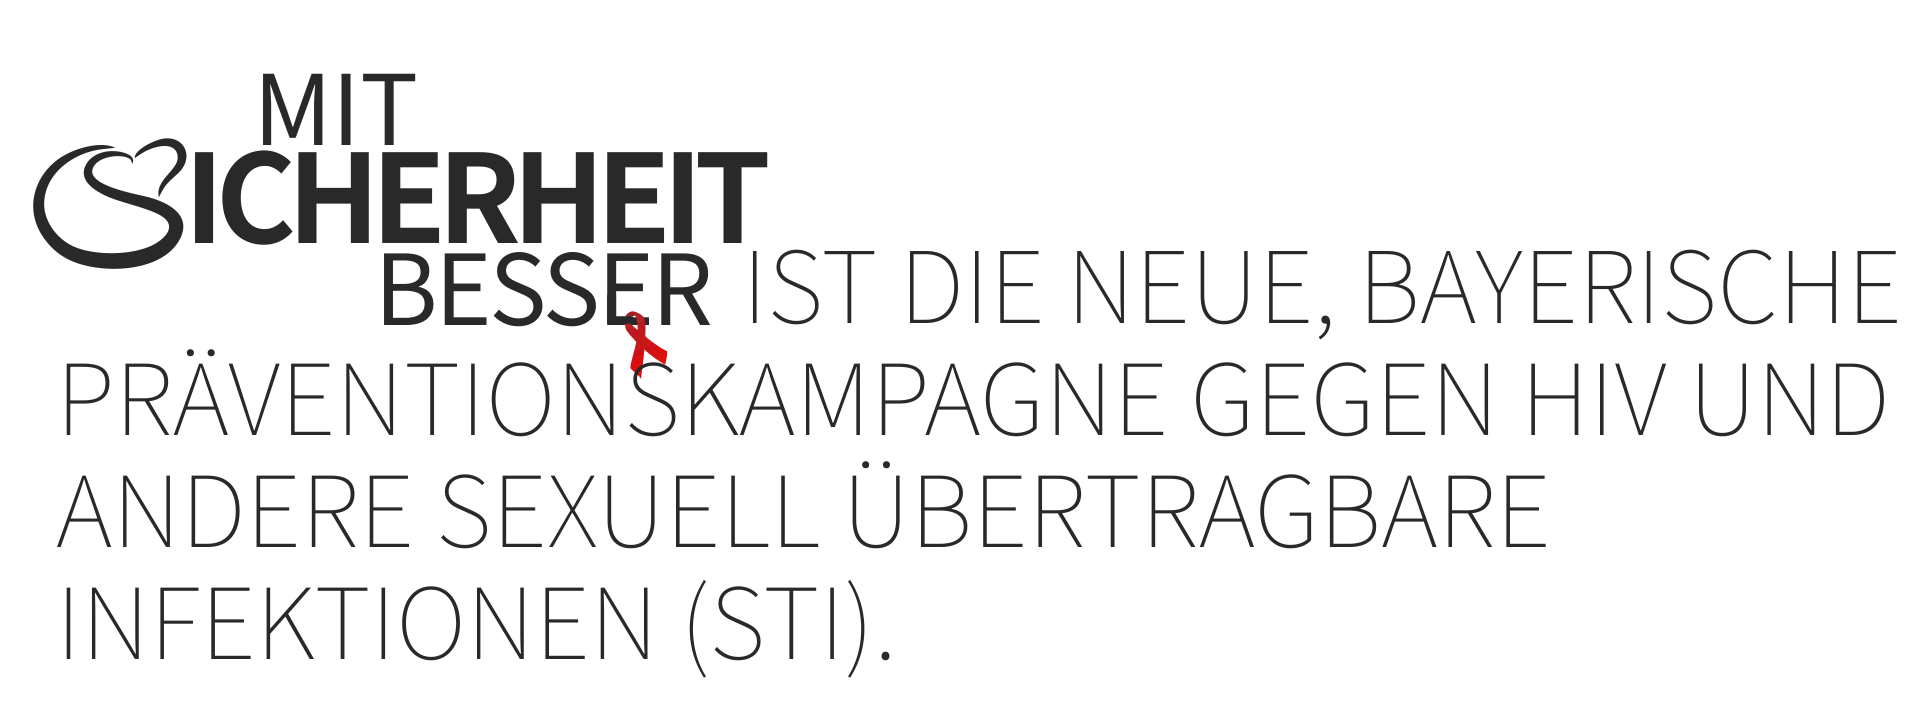 Logo der neuen, bayerischen HIV, STI & AIDS-Kampagne gefolgt von Grafiktext: "Mit Sicherheit besser ist die neue, bayerische Präventionskampagne gegen HIV und andere sexuell übertragbare Infektionen (STI)."